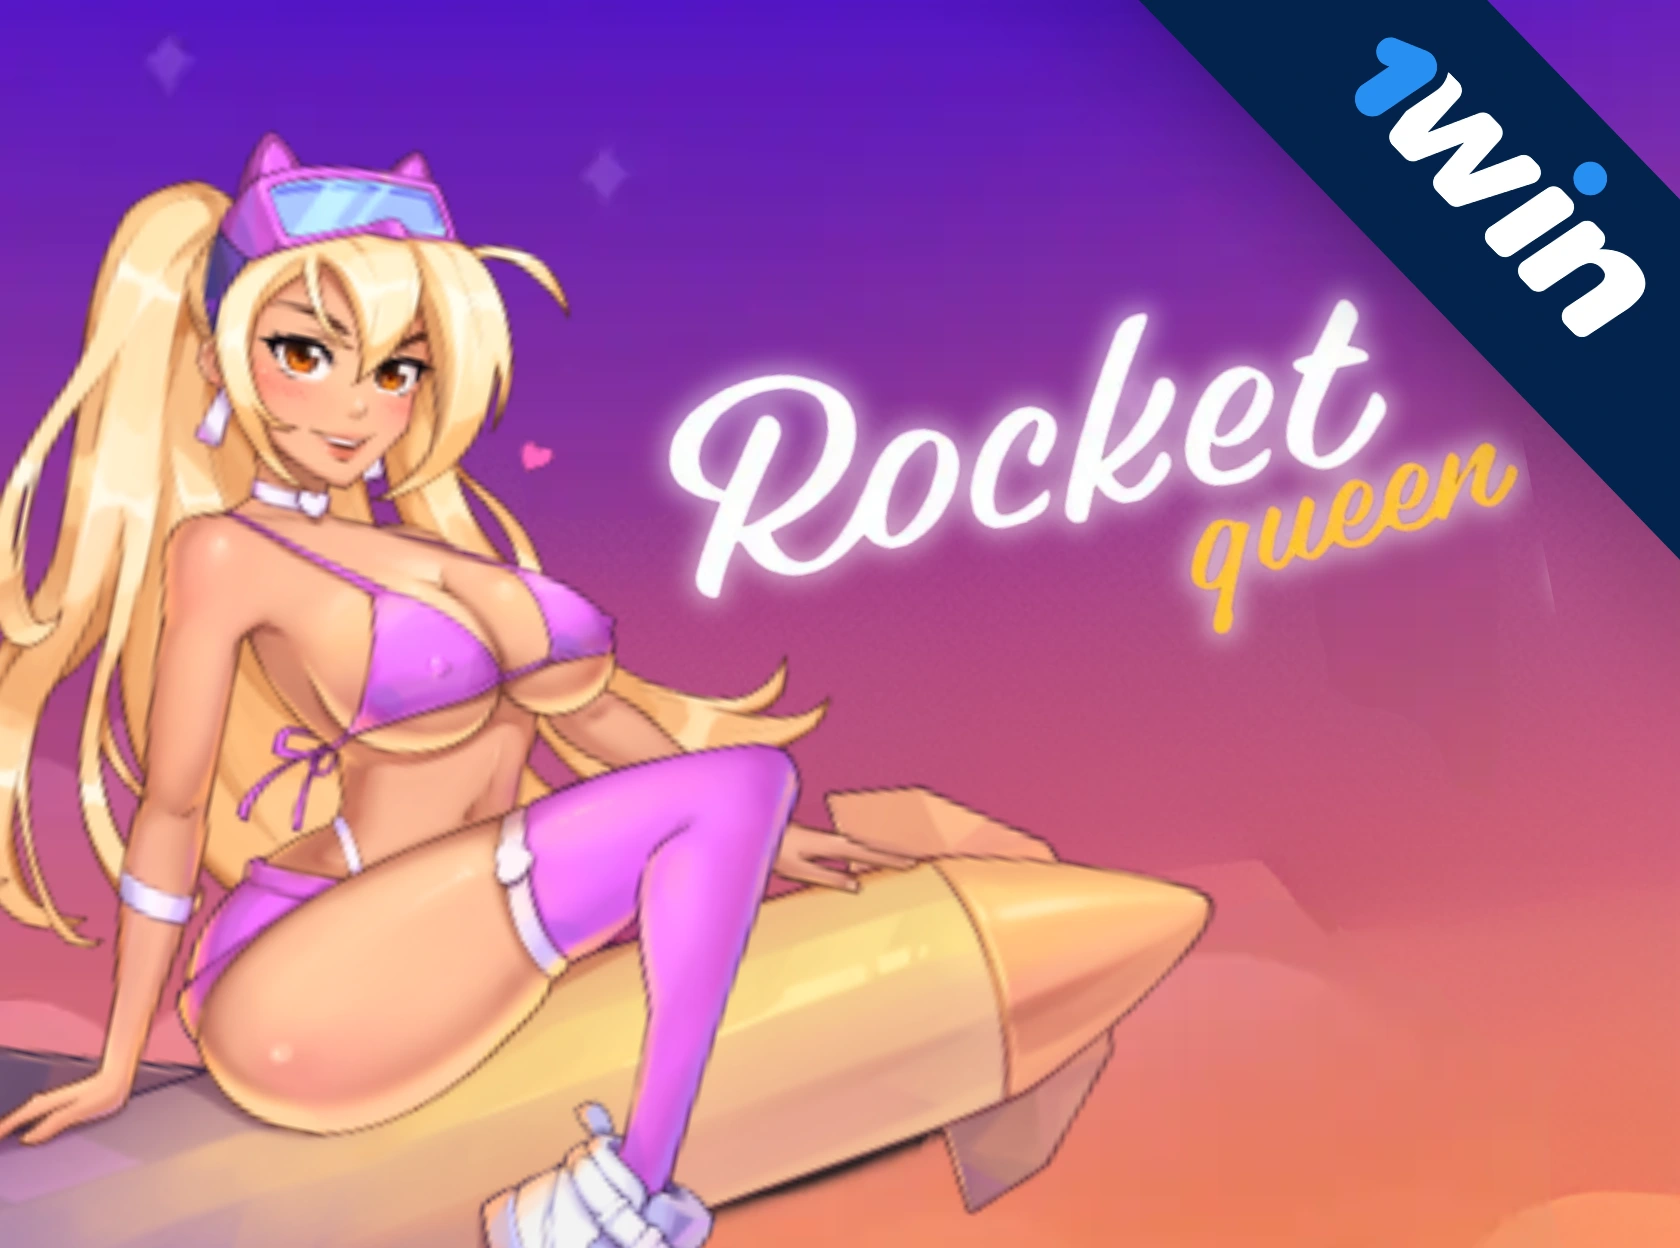 Rocket Queen - 1win এর বিস্ফোরক আঘাত!